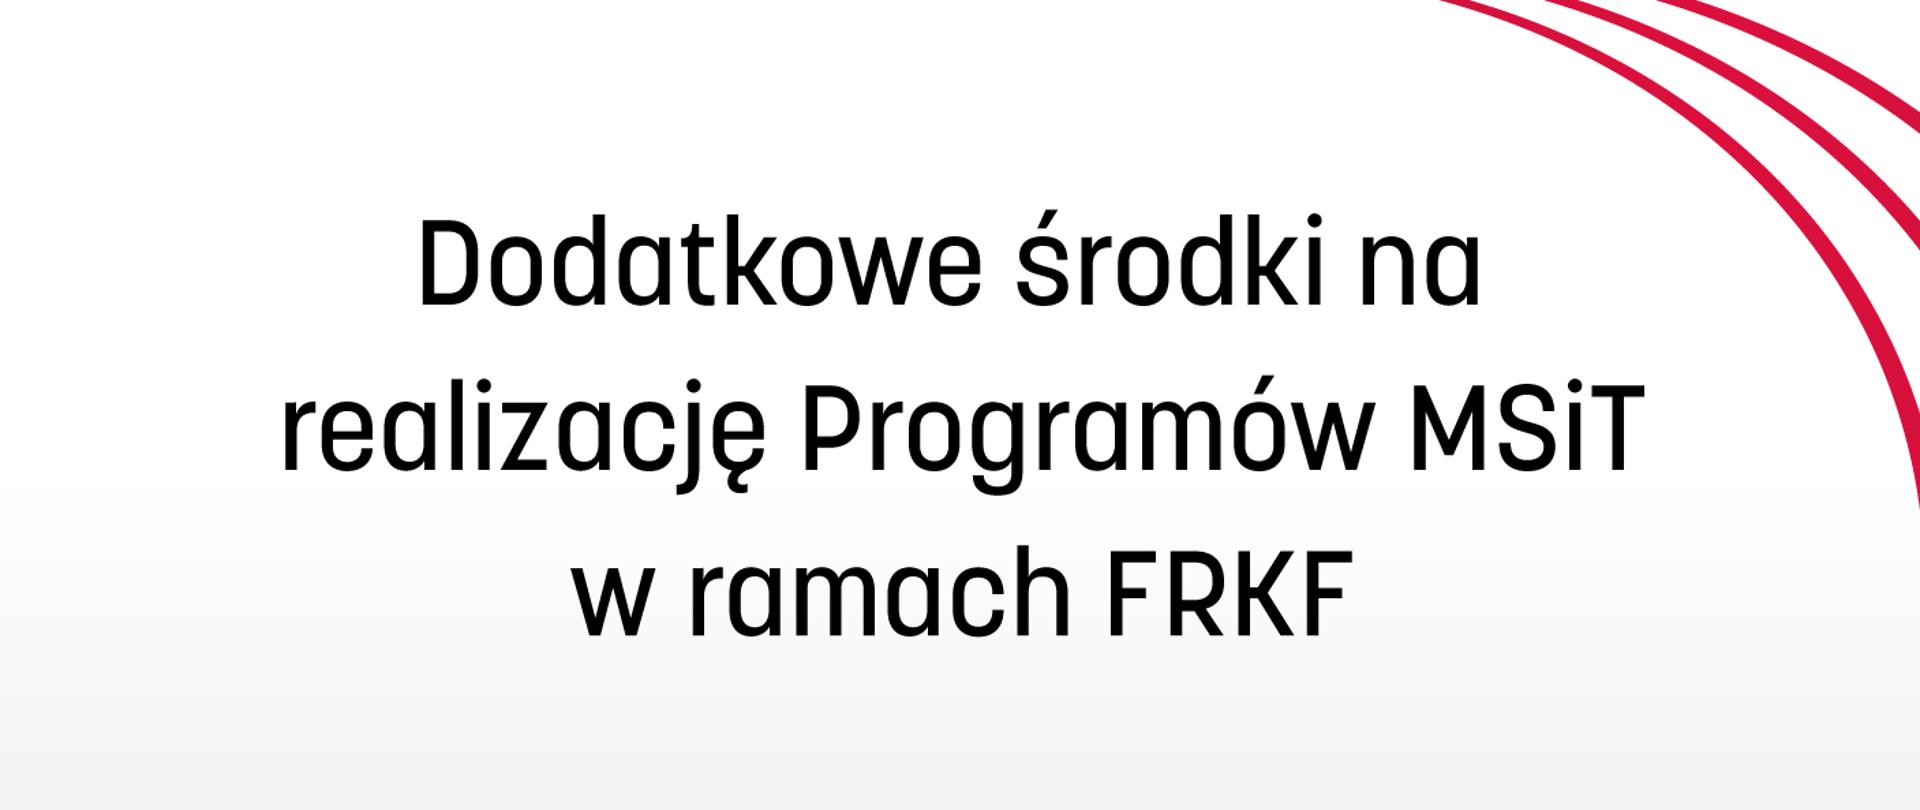 Dodatkowe środki na realizację Programów MSiT w ramach FRKF - plansza